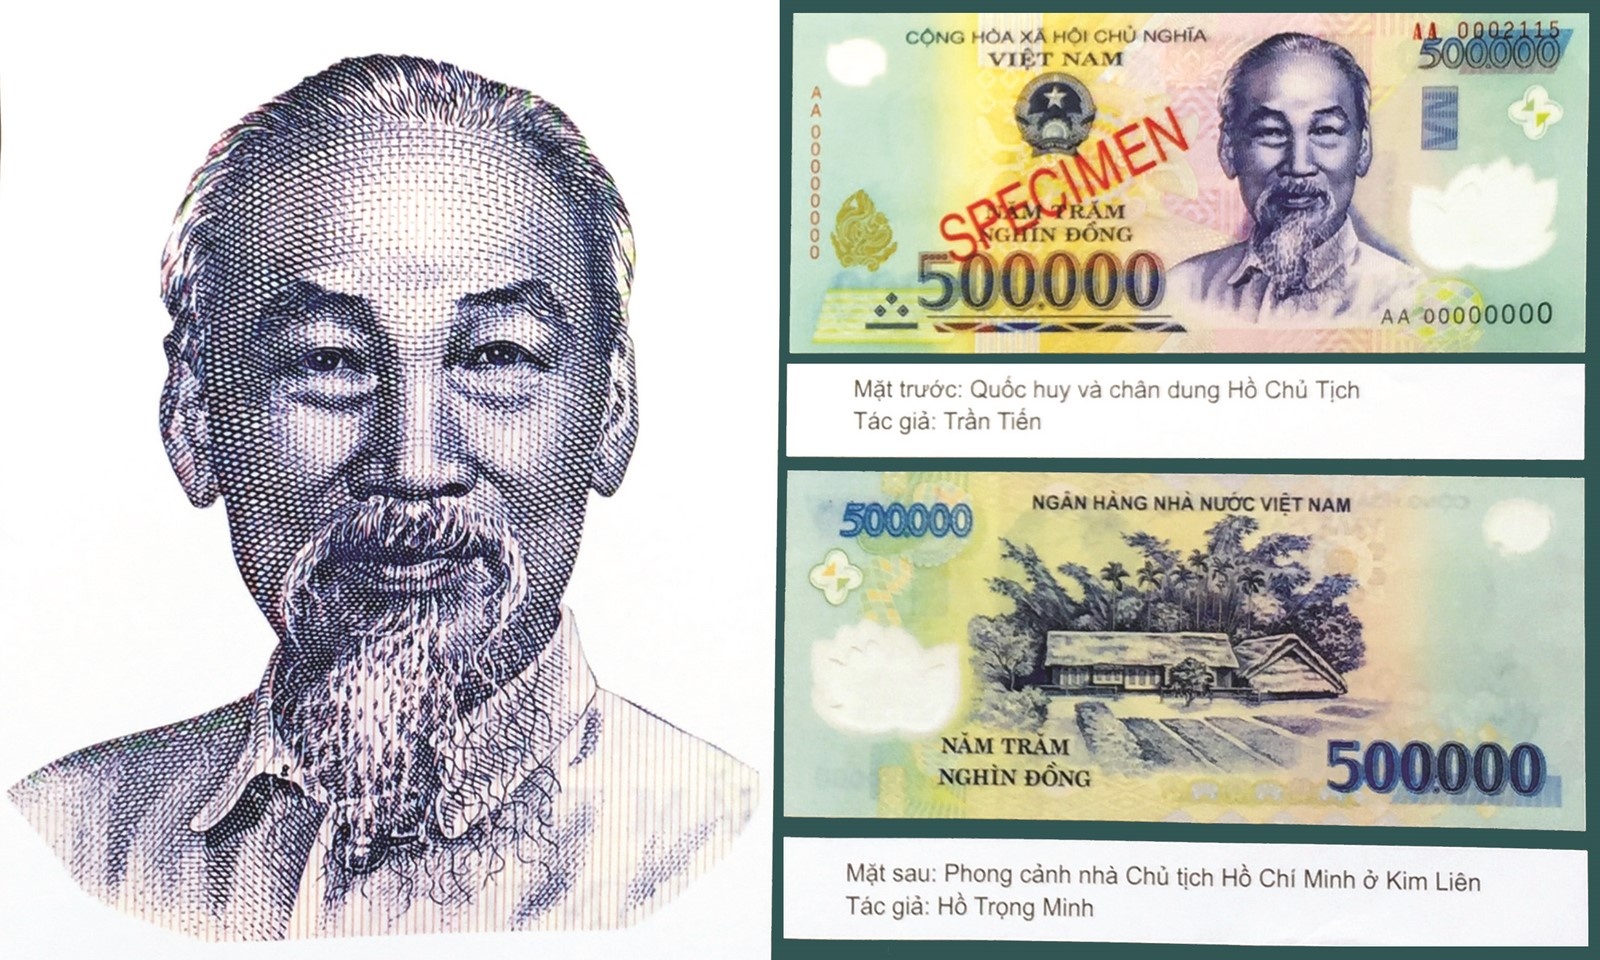 Hồ Chí Minh: Hãy khám phá bức ảnh phiên bản hiếm của Chủ tịch Hồ Chí Minh với đôi mắt tinh tường và nụ cười hiền hậu. Không chỉ là một nhân vật lịch sử quan trọng của Việt Nam, Chủ tịch Hồ còn là một biểu tượng của tinh thần độc lập, tự do và yêu nước.